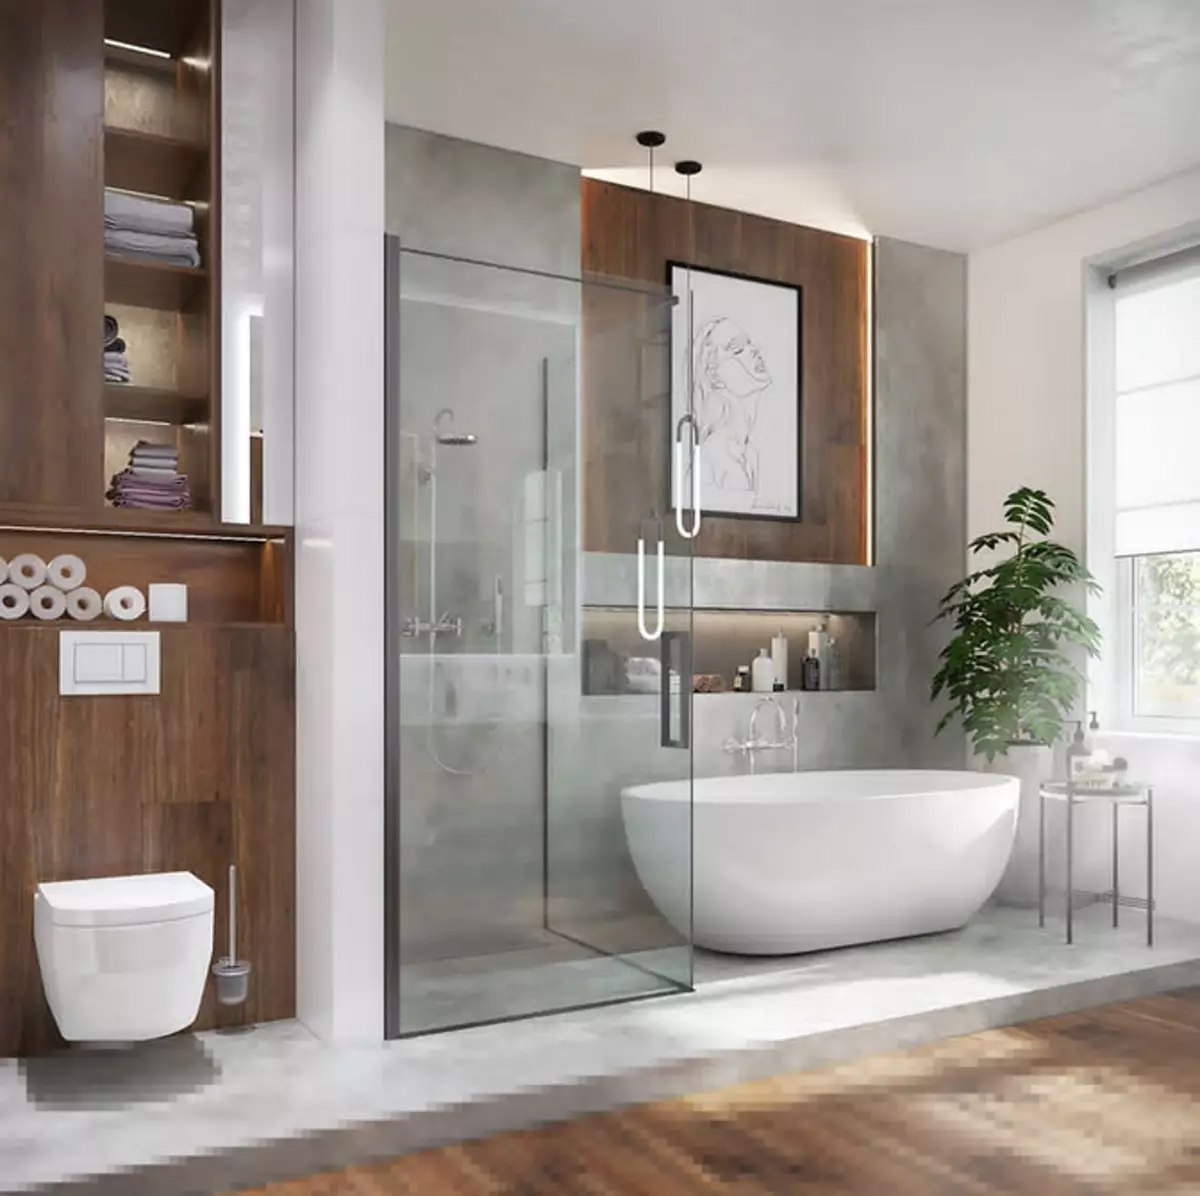 Diseño de baño con ducha y baño: ideas interiores en 75 fotos - IVD.RU 4108_24